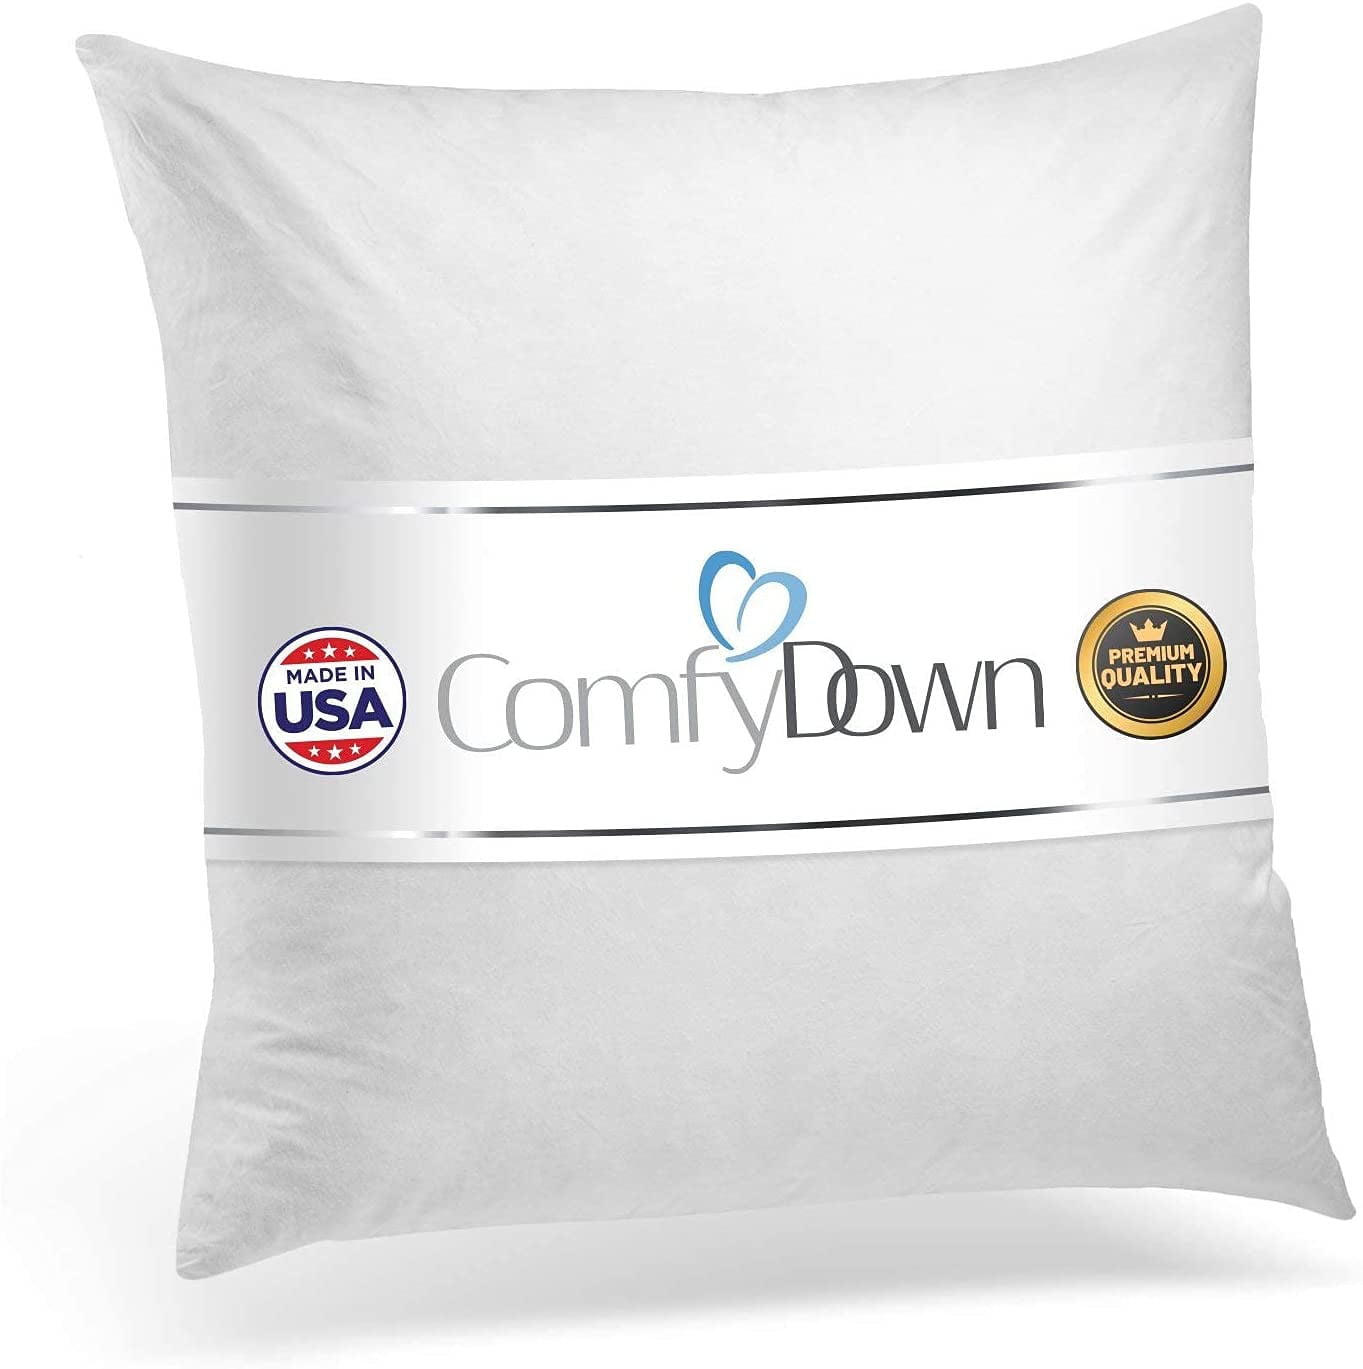 Synthetic Down 18 X 18 Pillow Insert STUFF & FLUFF, Super Soft Design 